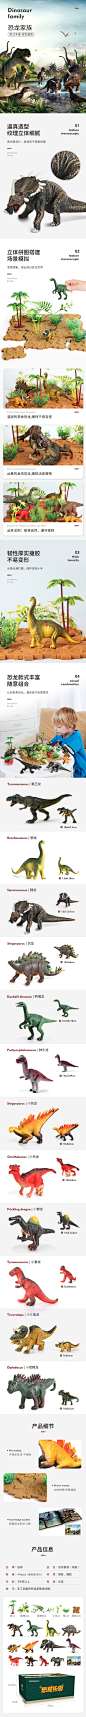 恐龙玩具详情页